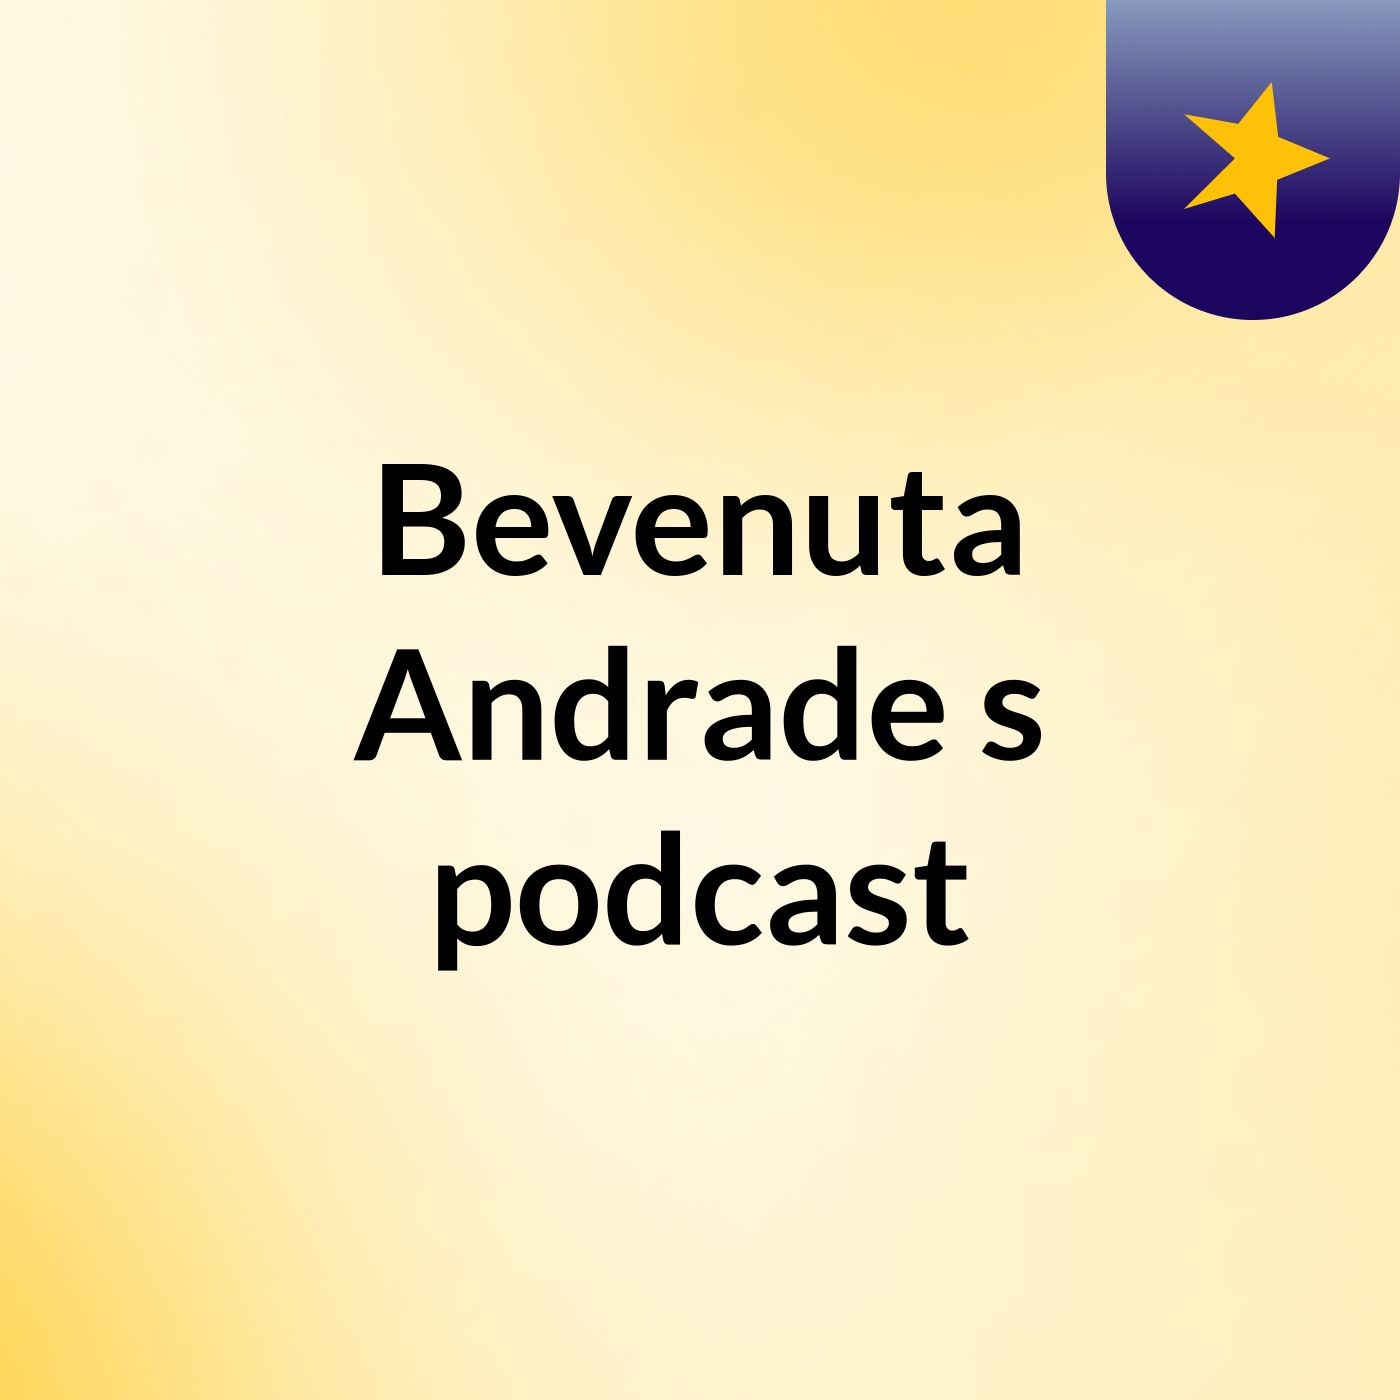 Bevenuta Andrade's podcast